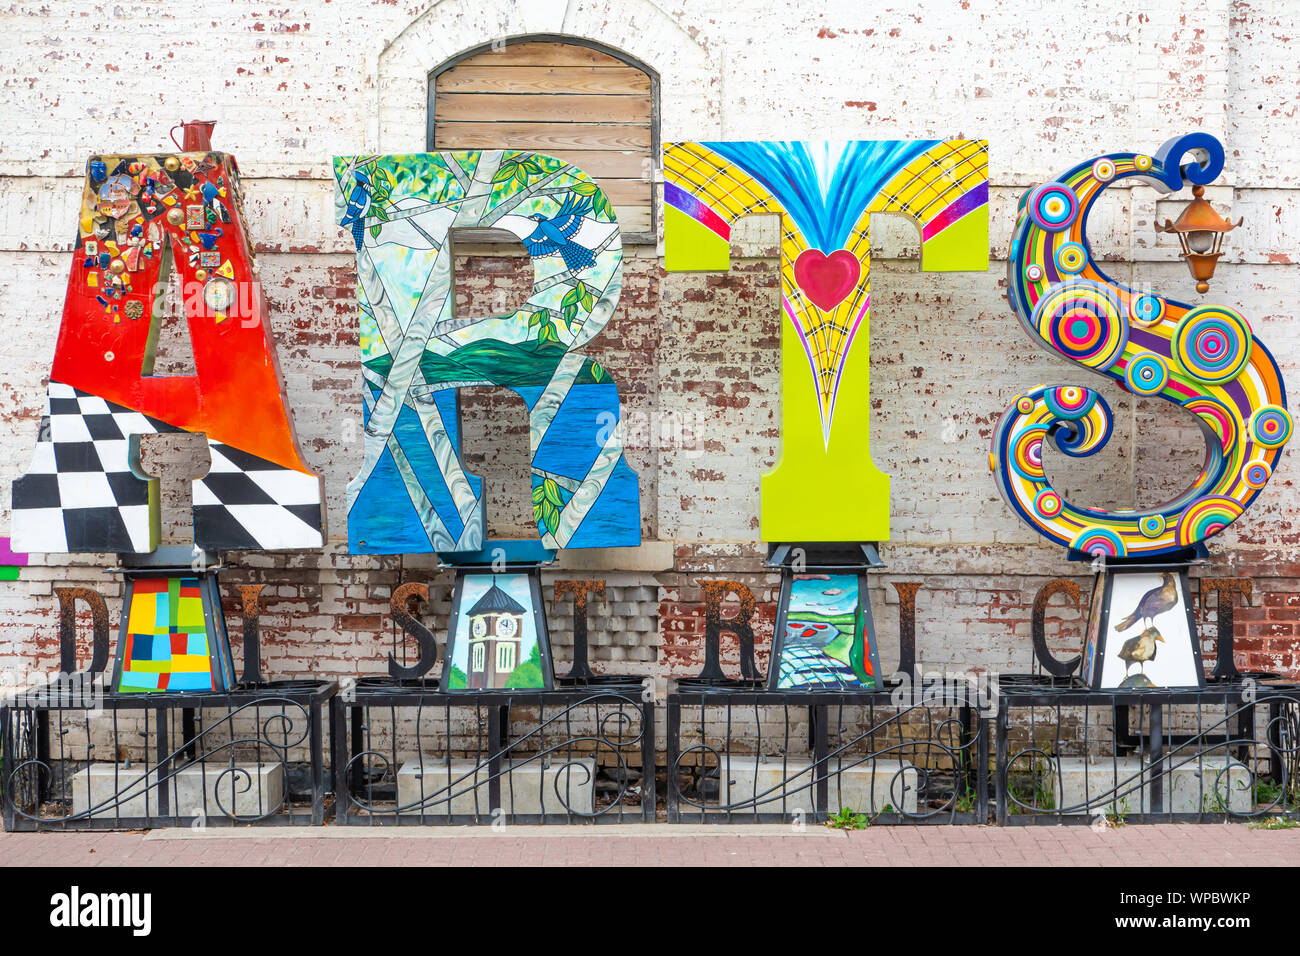 Inscrivez-colorés dans le quartier des Arts du centre-ville d'Orillia Ontario Canada annonçant la communauté artistique florissante dans la région. Banque D'Images